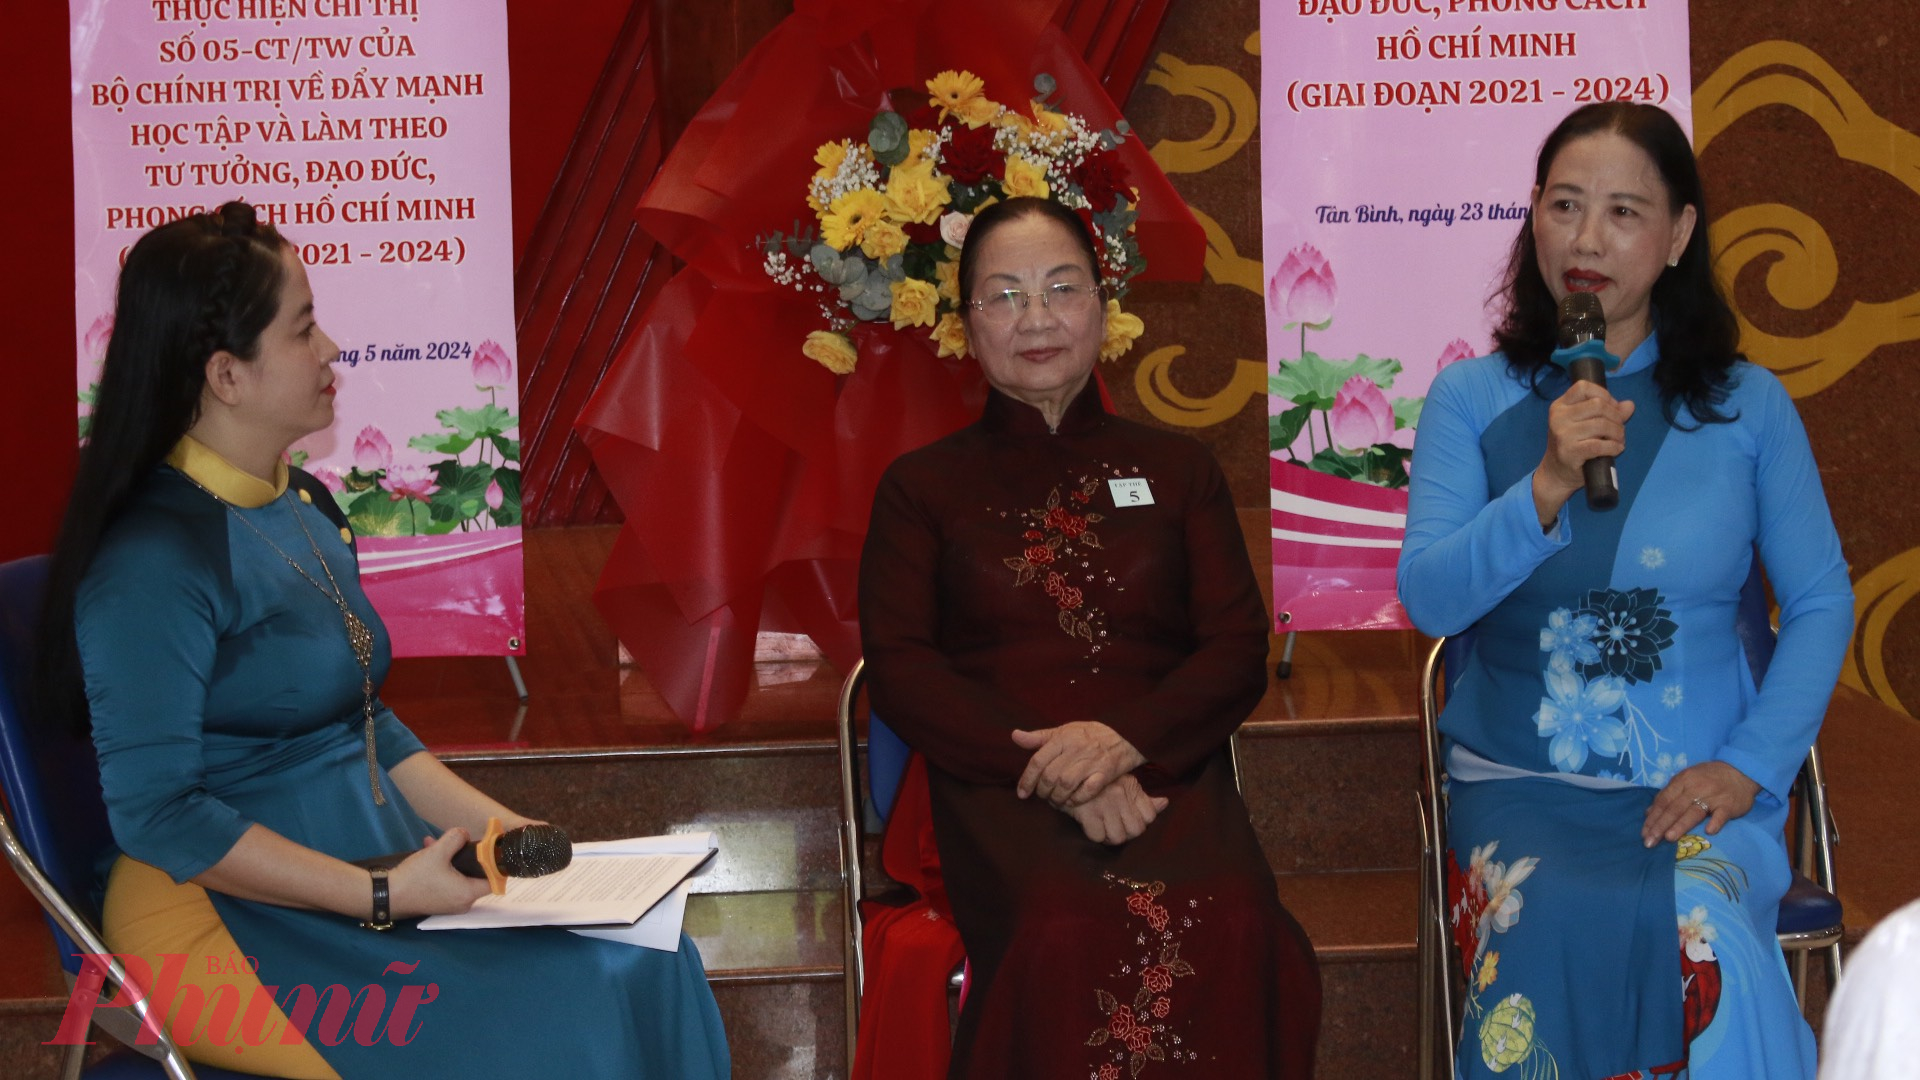 Nguyễn Thị Hoa - Chi hội trưởng chi hội phụ nữ khu phố 7, phường 13, quận Tân Bình giao lưu tại hội nghị.